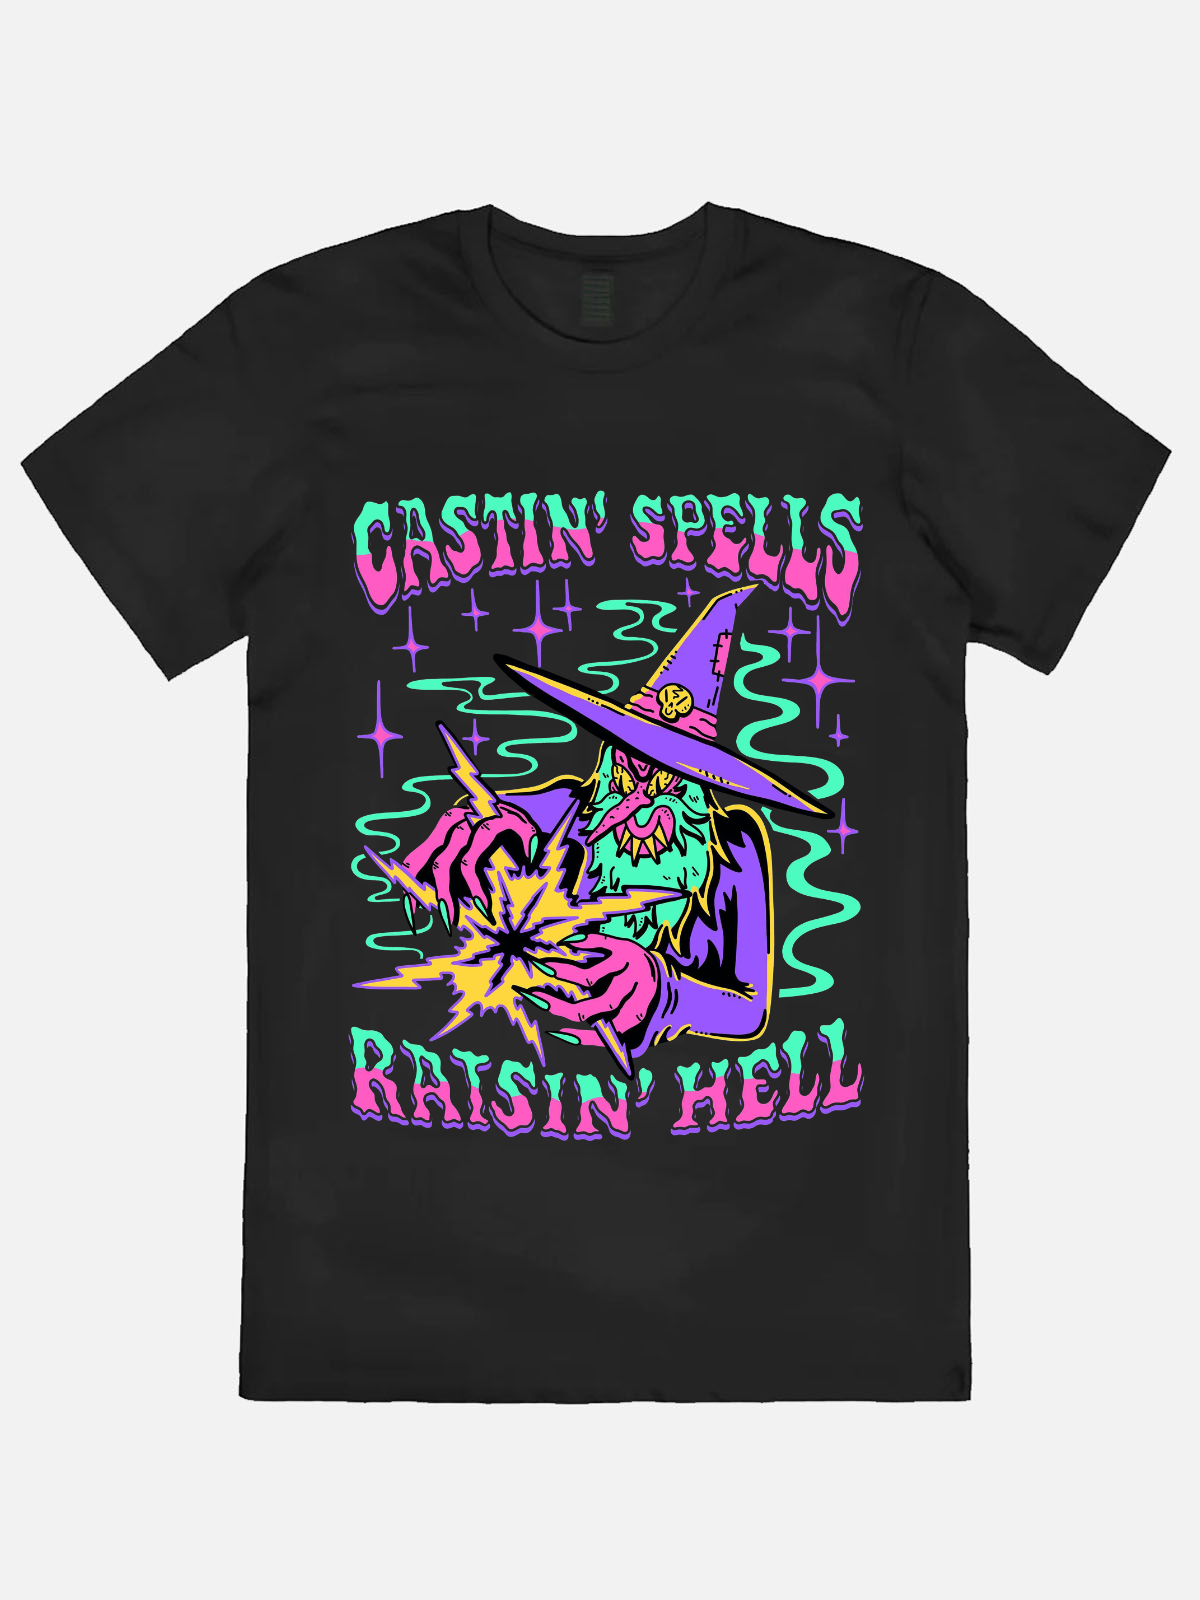 Castin Spells Raisin Hell Casual Printed T-shirt